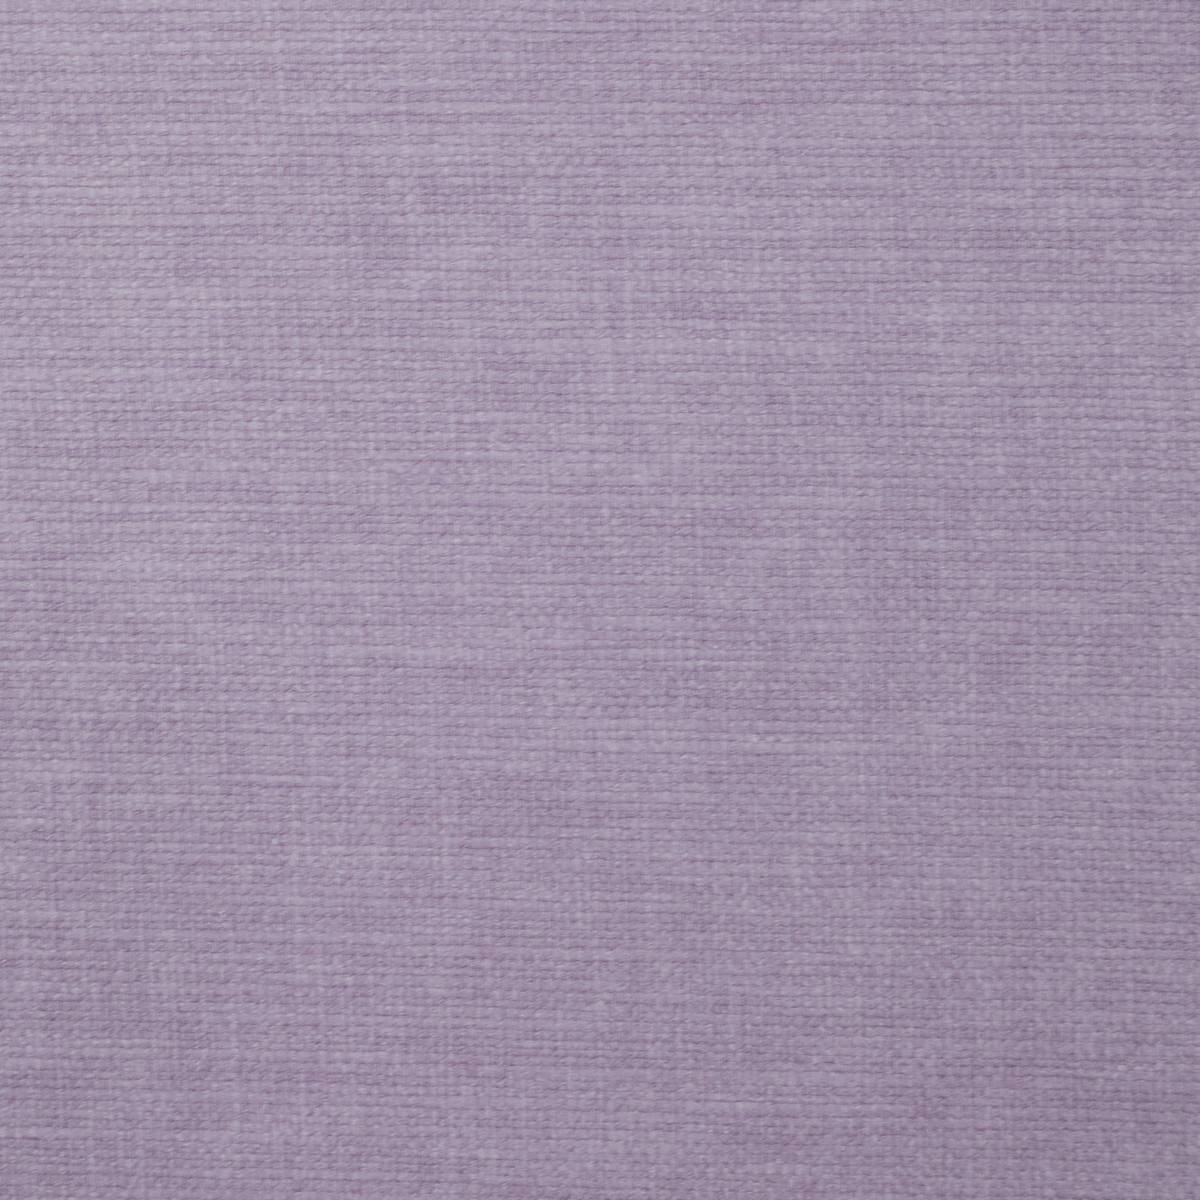 Lunar Violet Fabric by Ashley Wilde